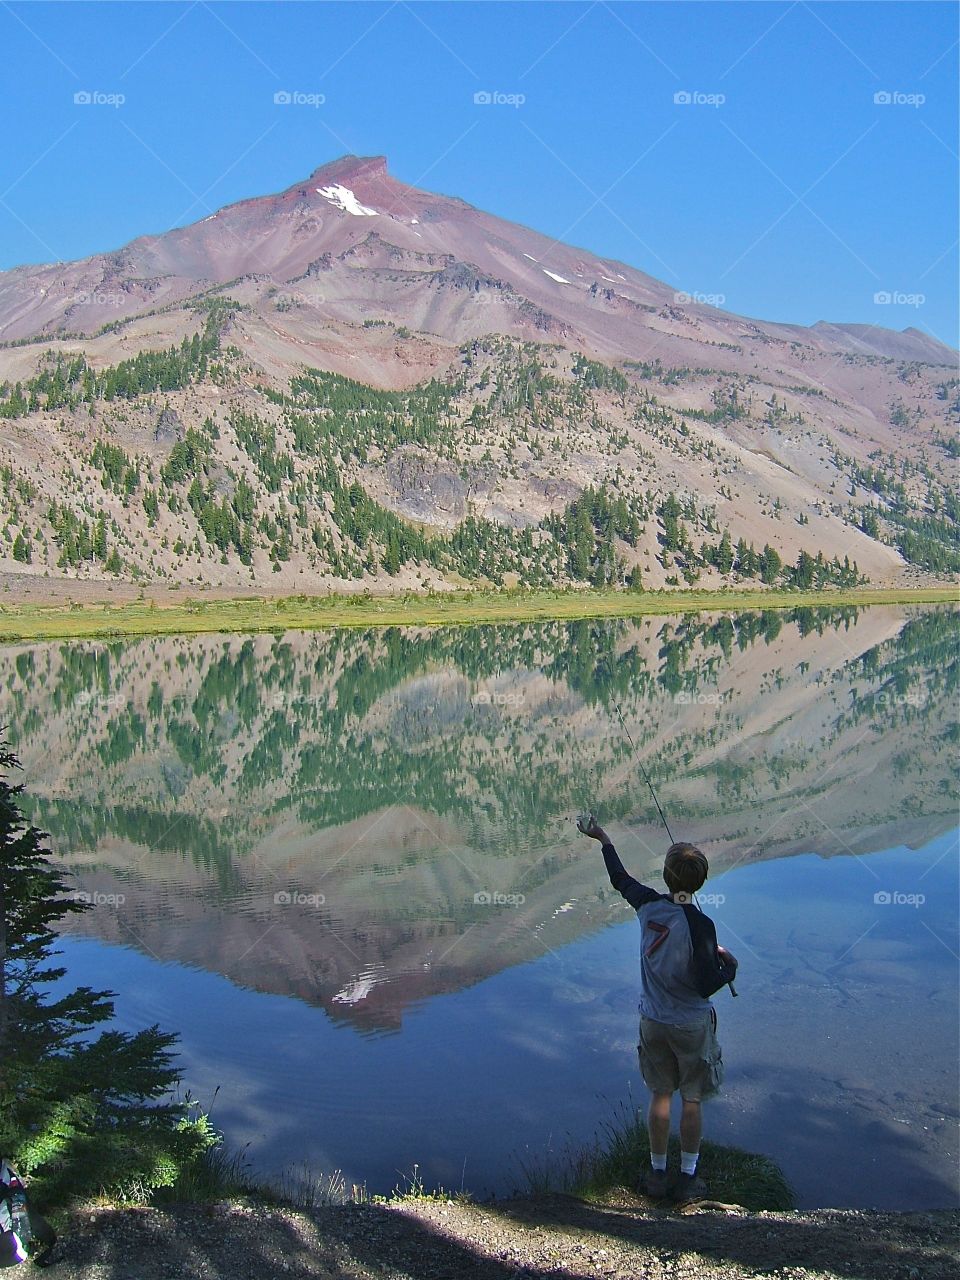 Mountain Reflection. Young man fishing in mountain lake